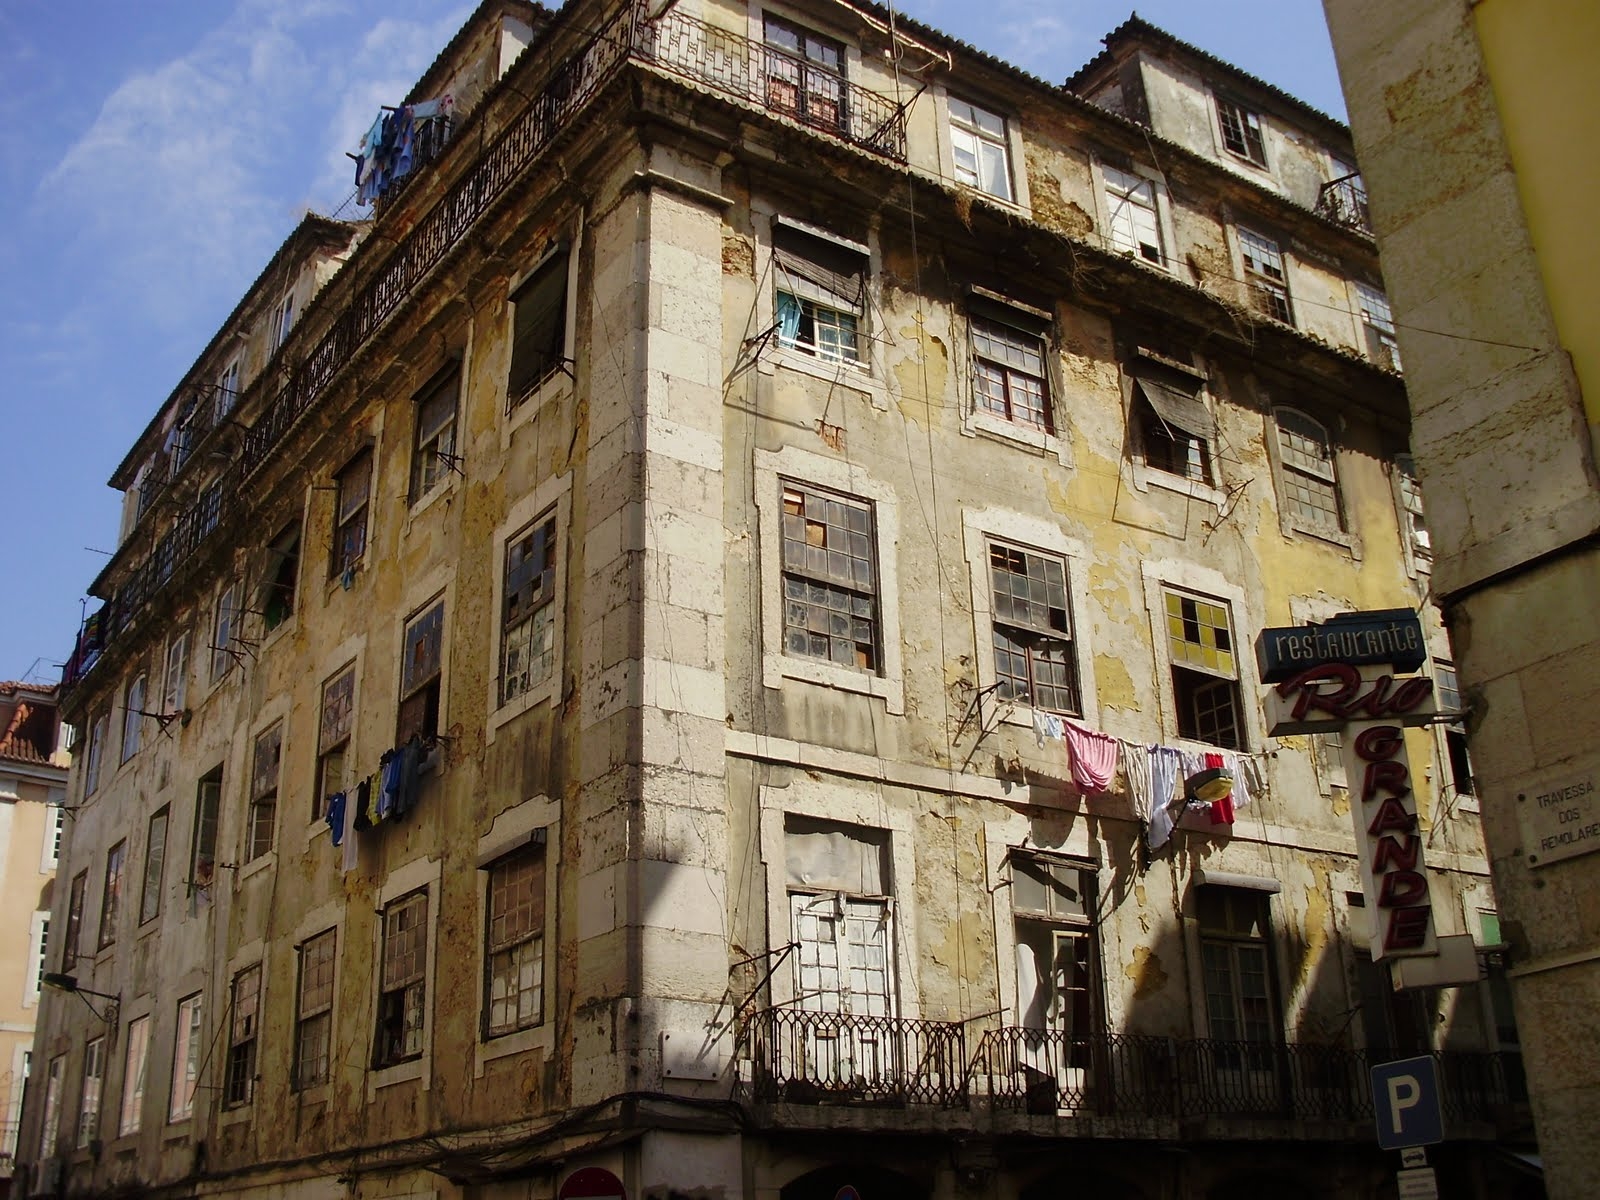 Lissabon-Baixa-Pombalino-JPG